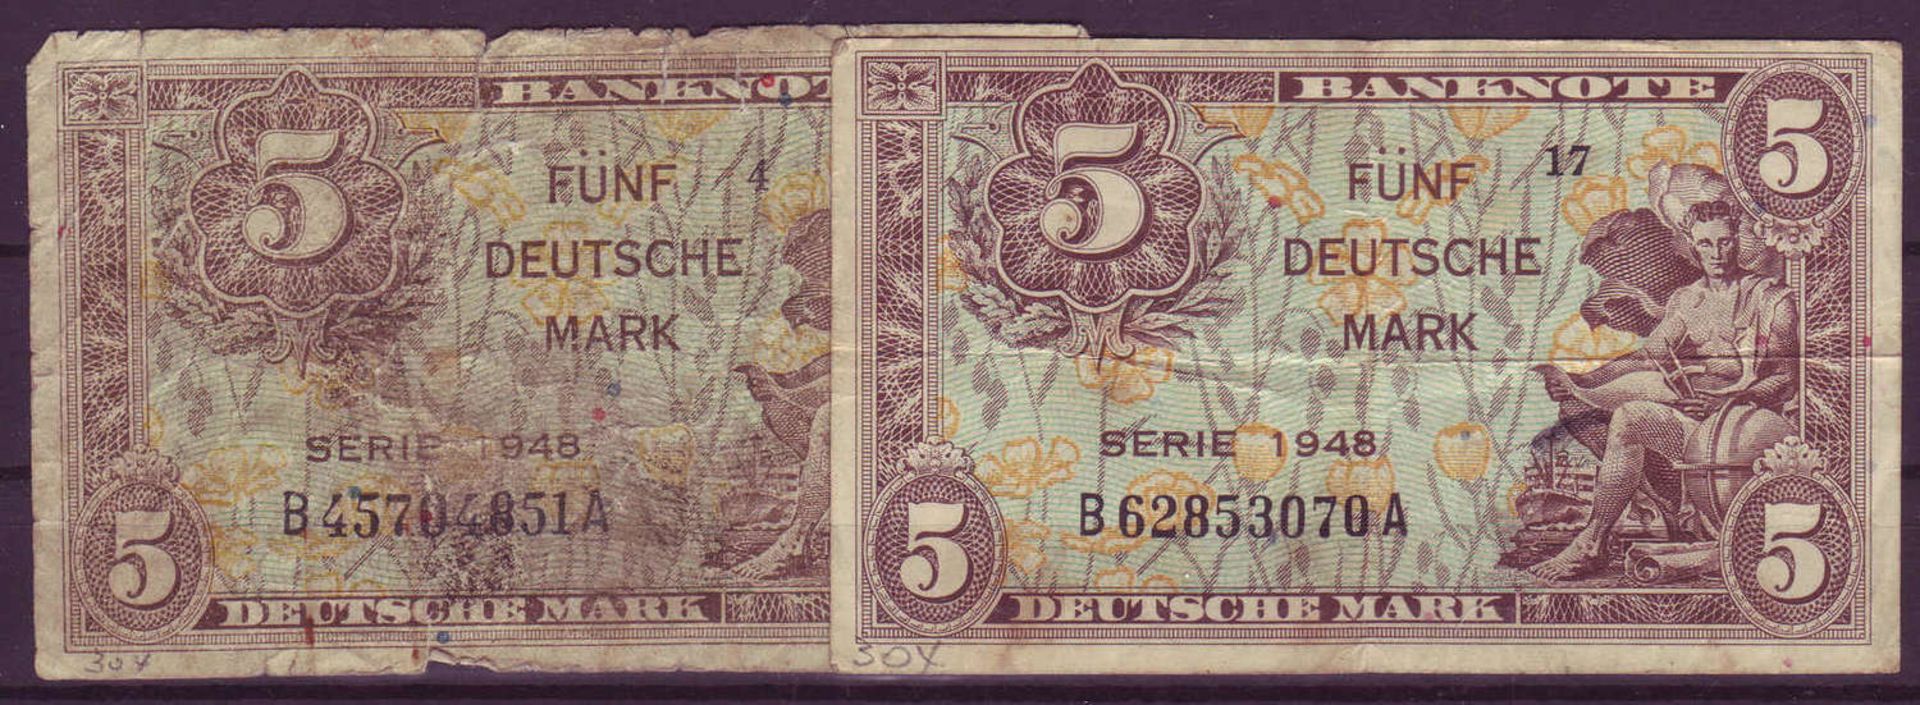 Alliierte Besetzung 1948, Bank deutscher Länder, 2 x 5 deutsche Mark. Rosenberg 236. Zustand: